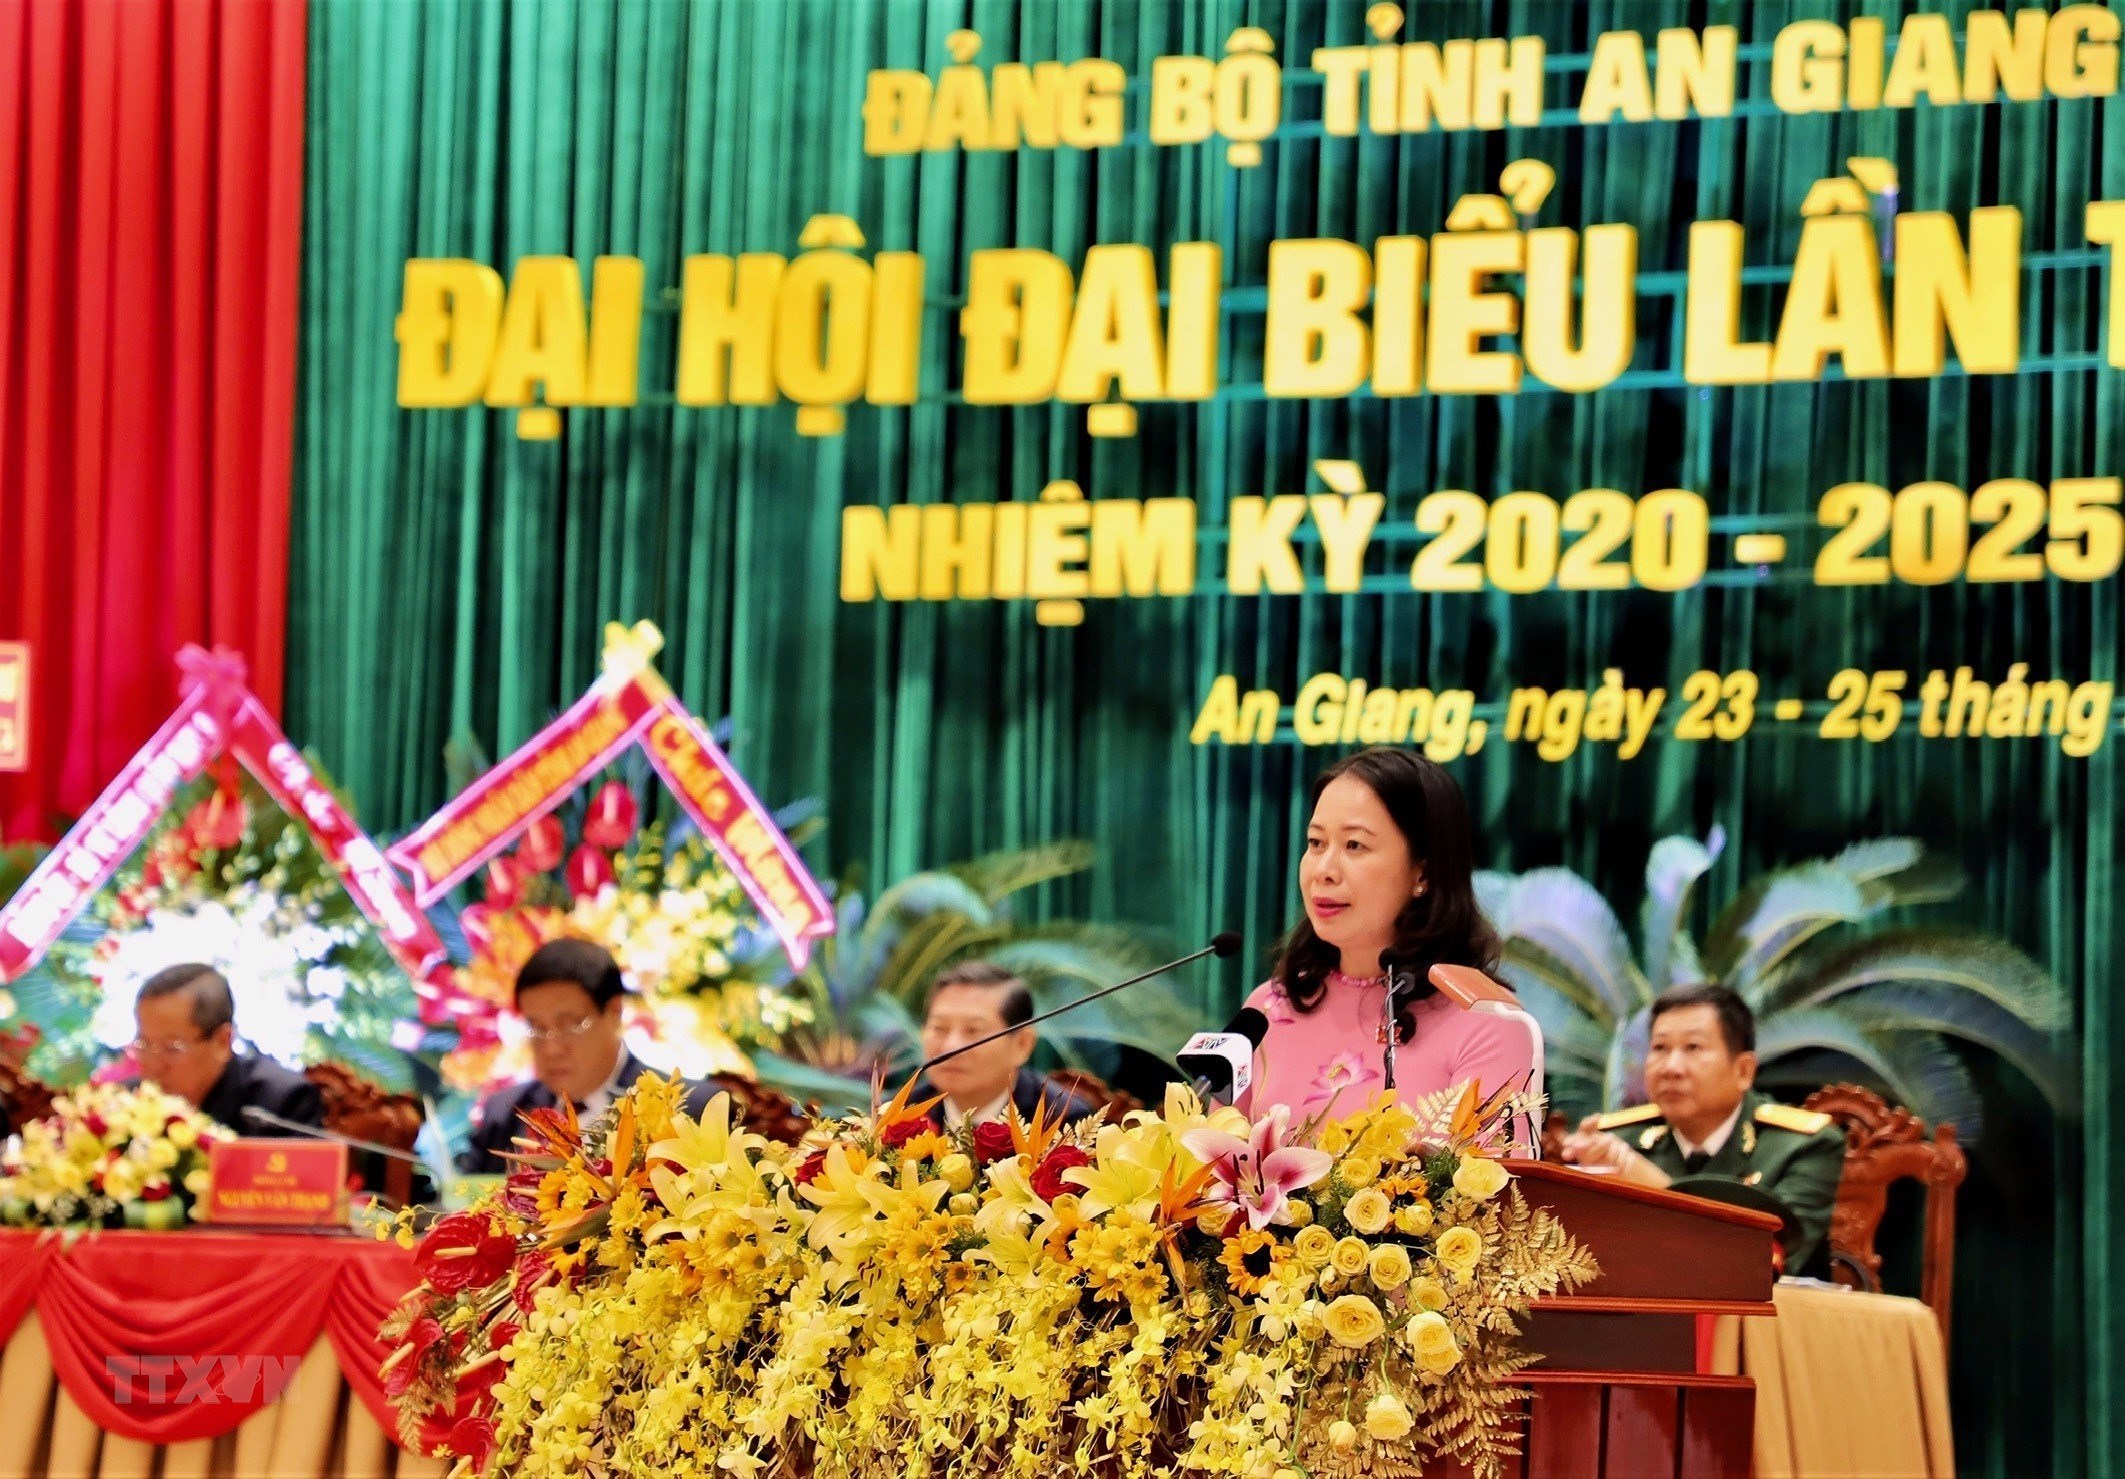 14 Dang bo to chuc thanh cong Dai hoi nhiem ky 2020-2025 hinh anh 2